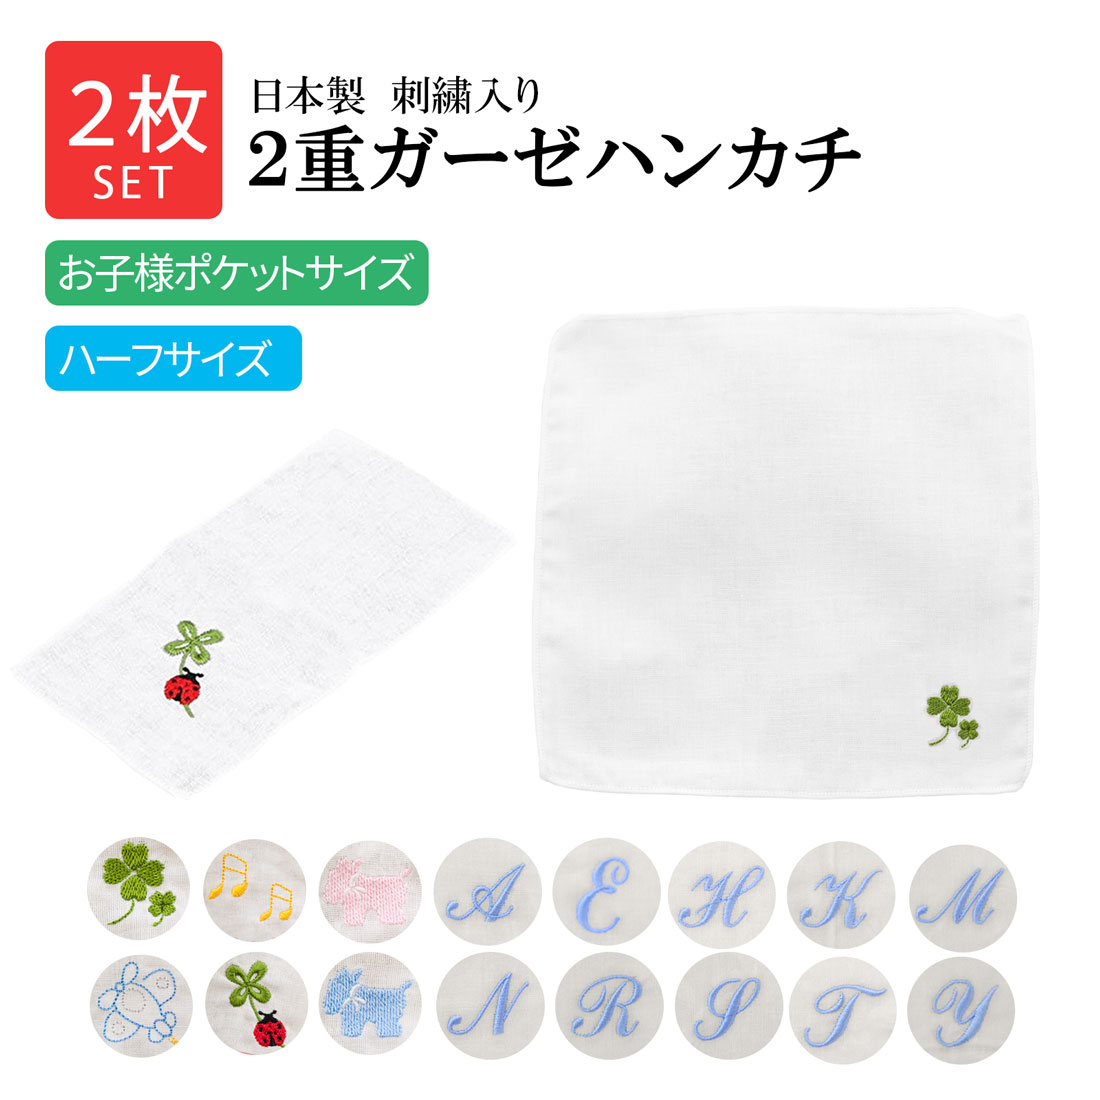 2枚セット 日本製 刺繍入り・2重ガーゼハンカチ お子様ポケットサイズ ハーフサイズ